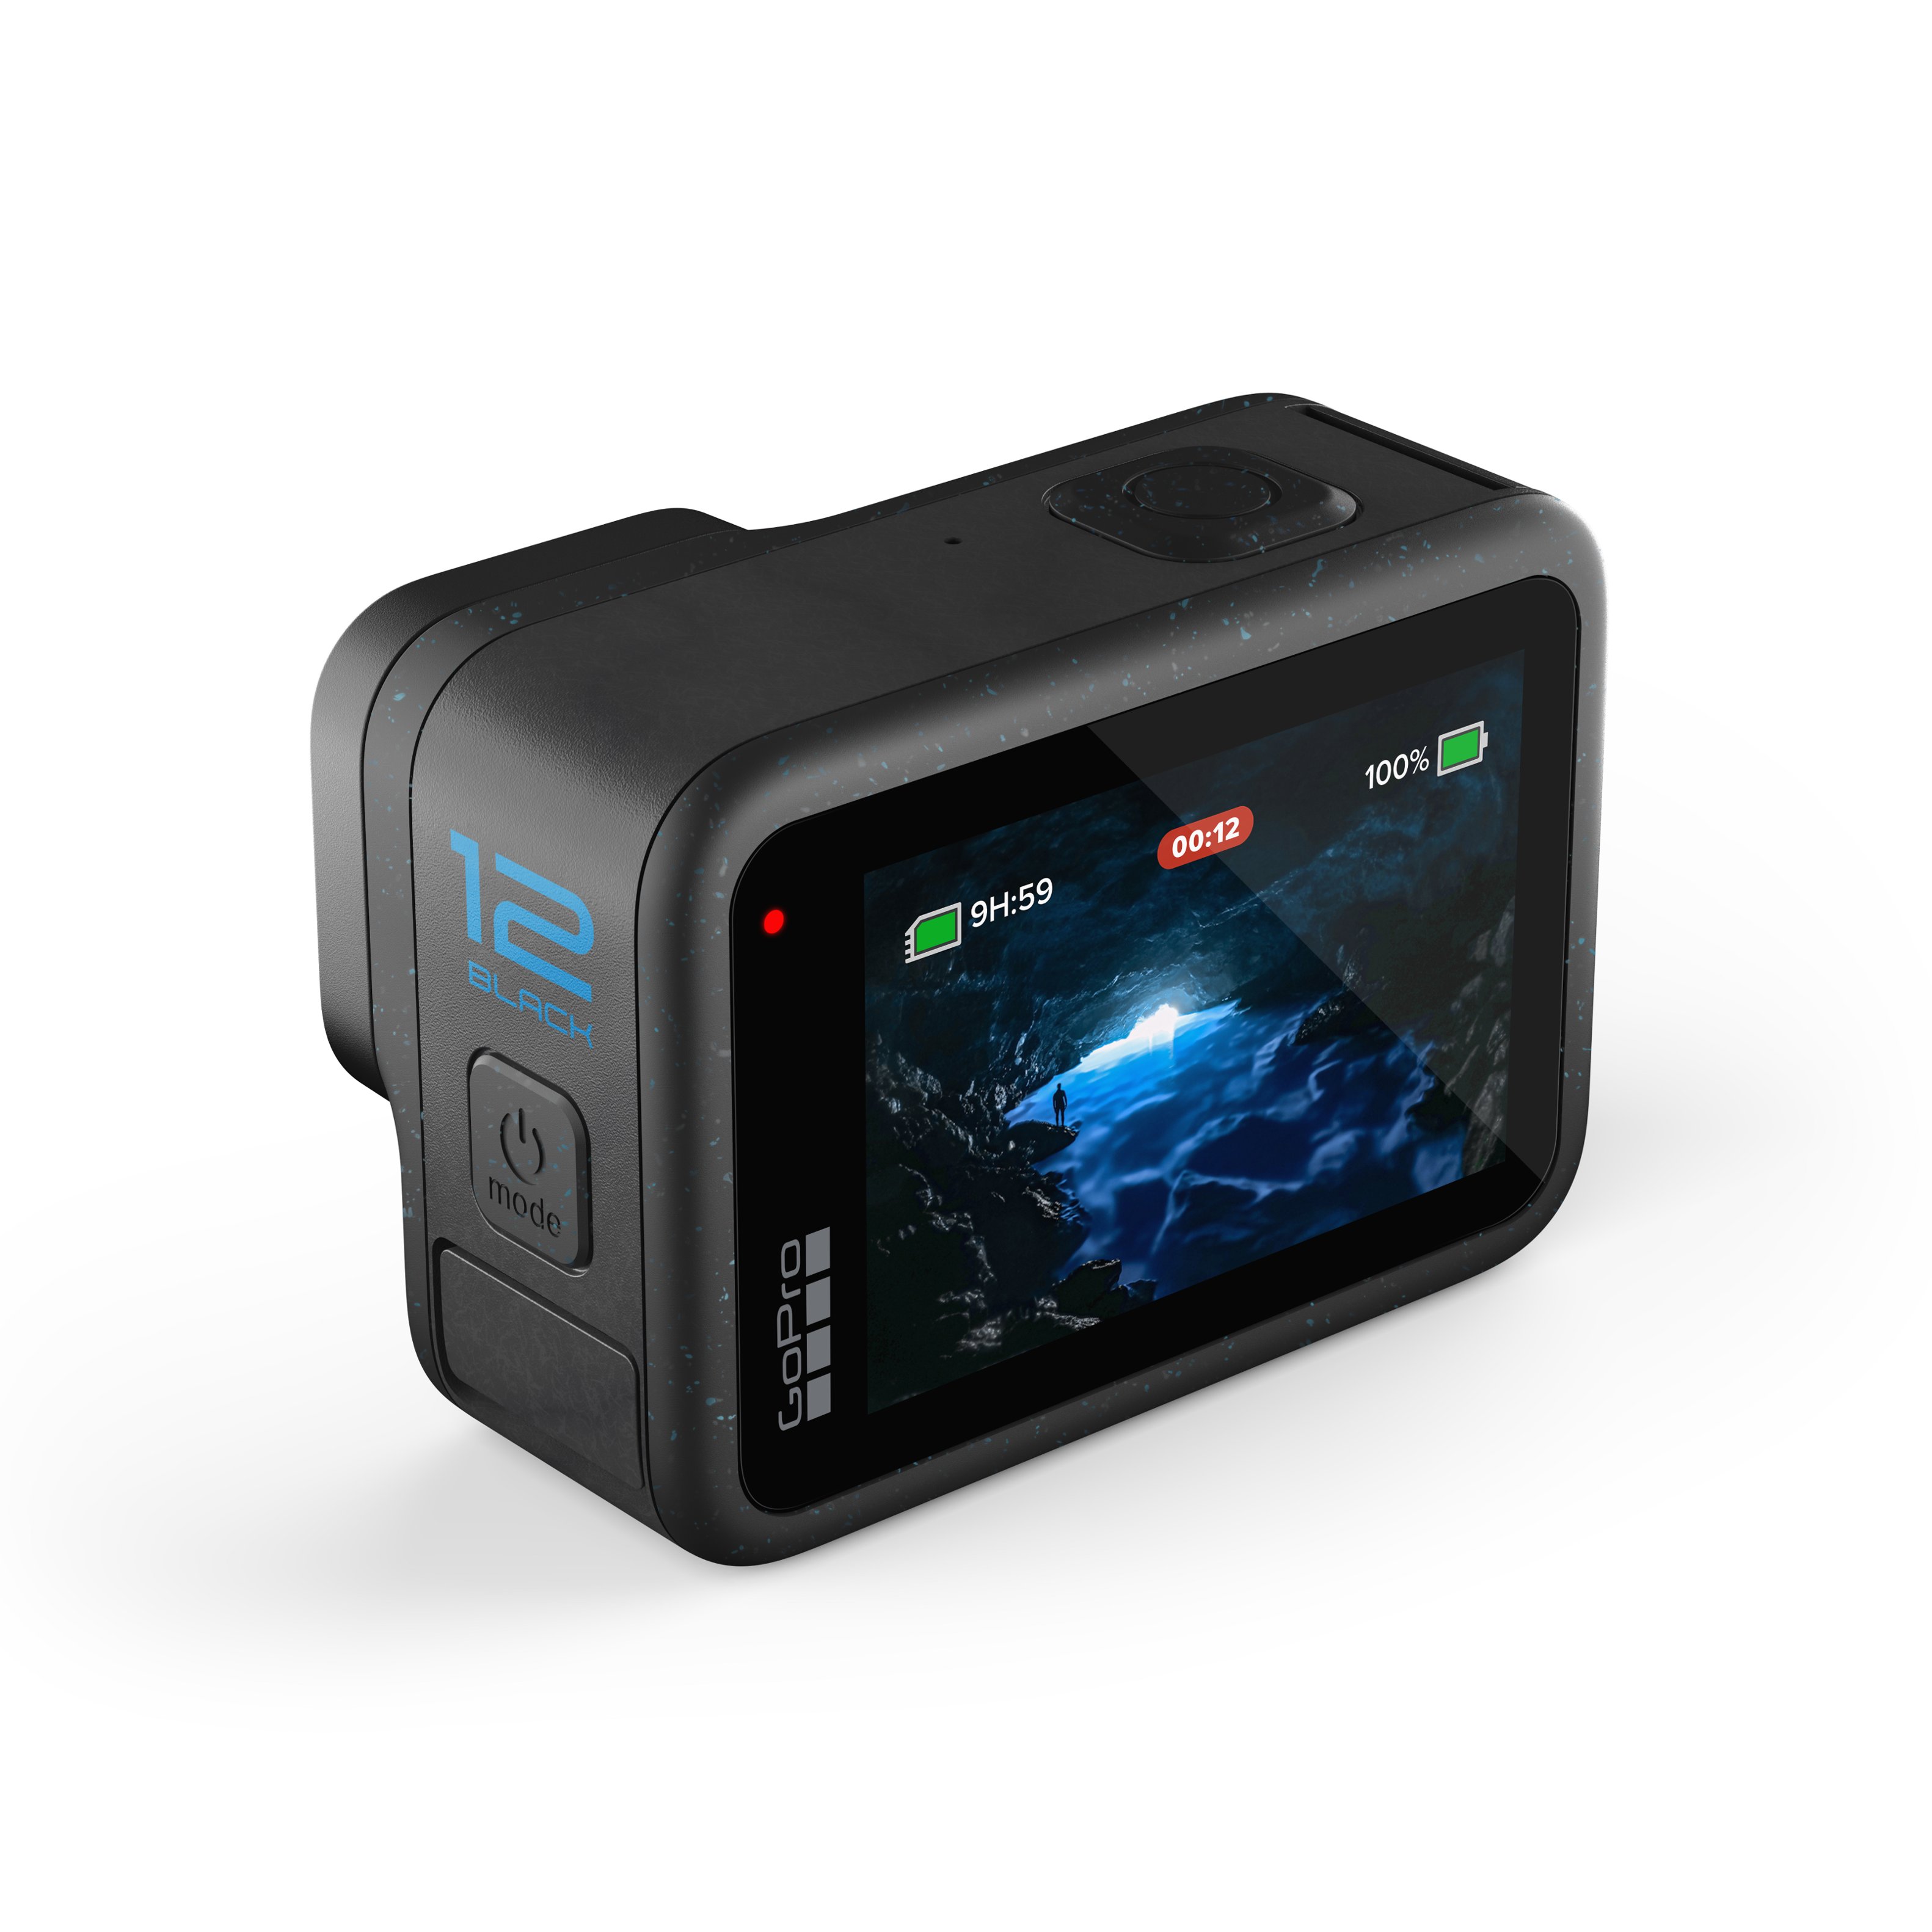 Caméra d’action HERO12 Black (étanche + stabilisation) de GoPro